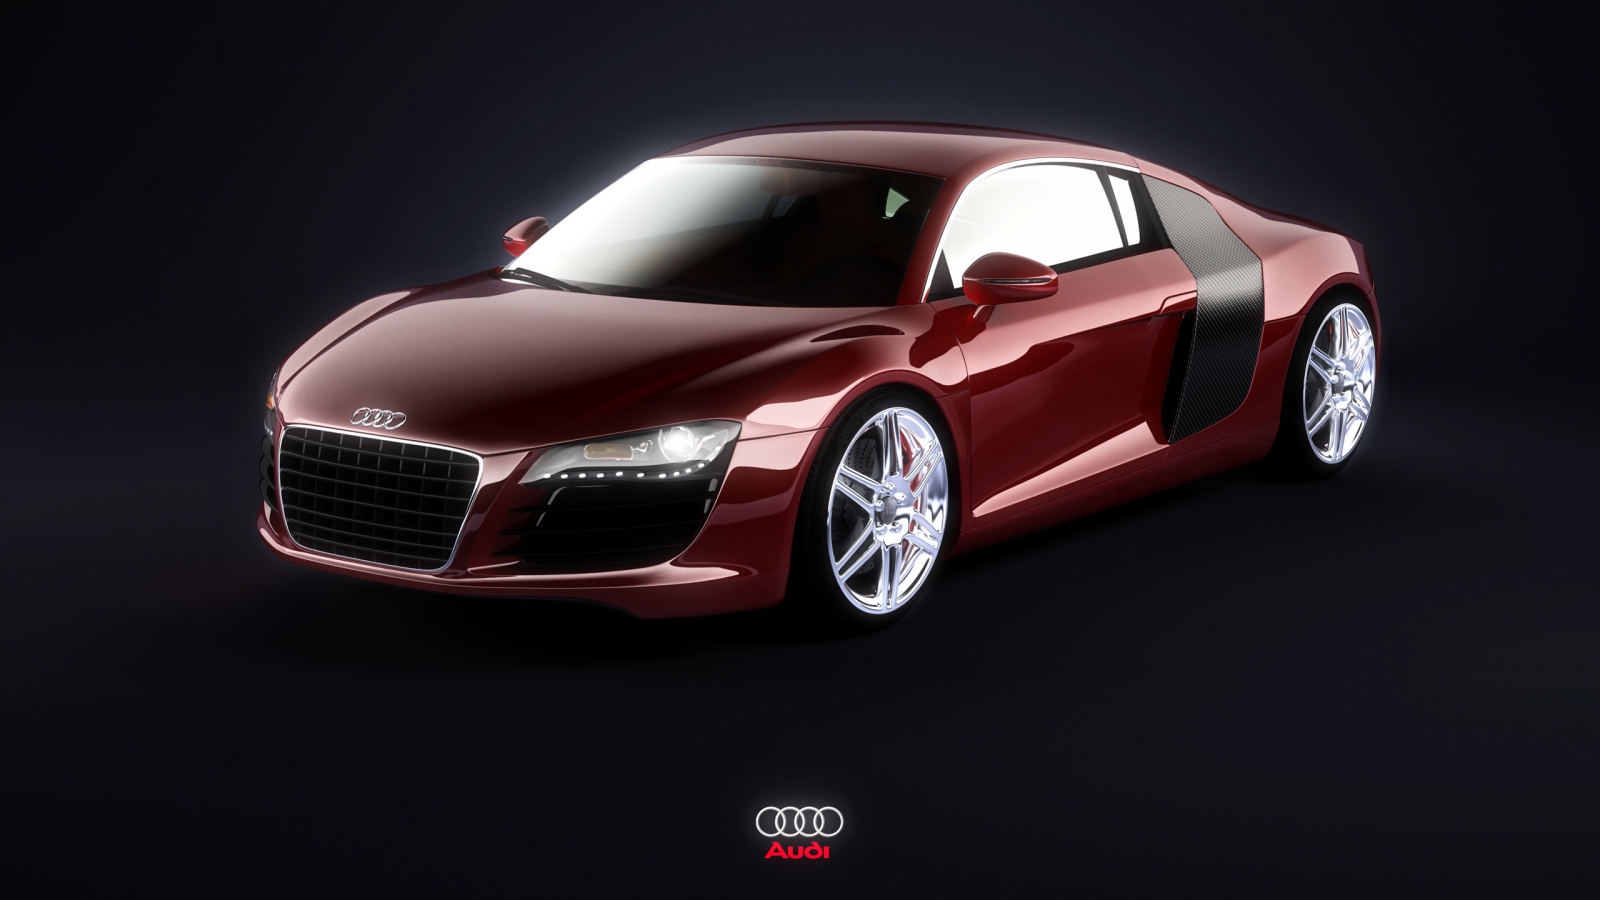 Audi R8 Burgundy for 1600 x 900 HDTV resolution